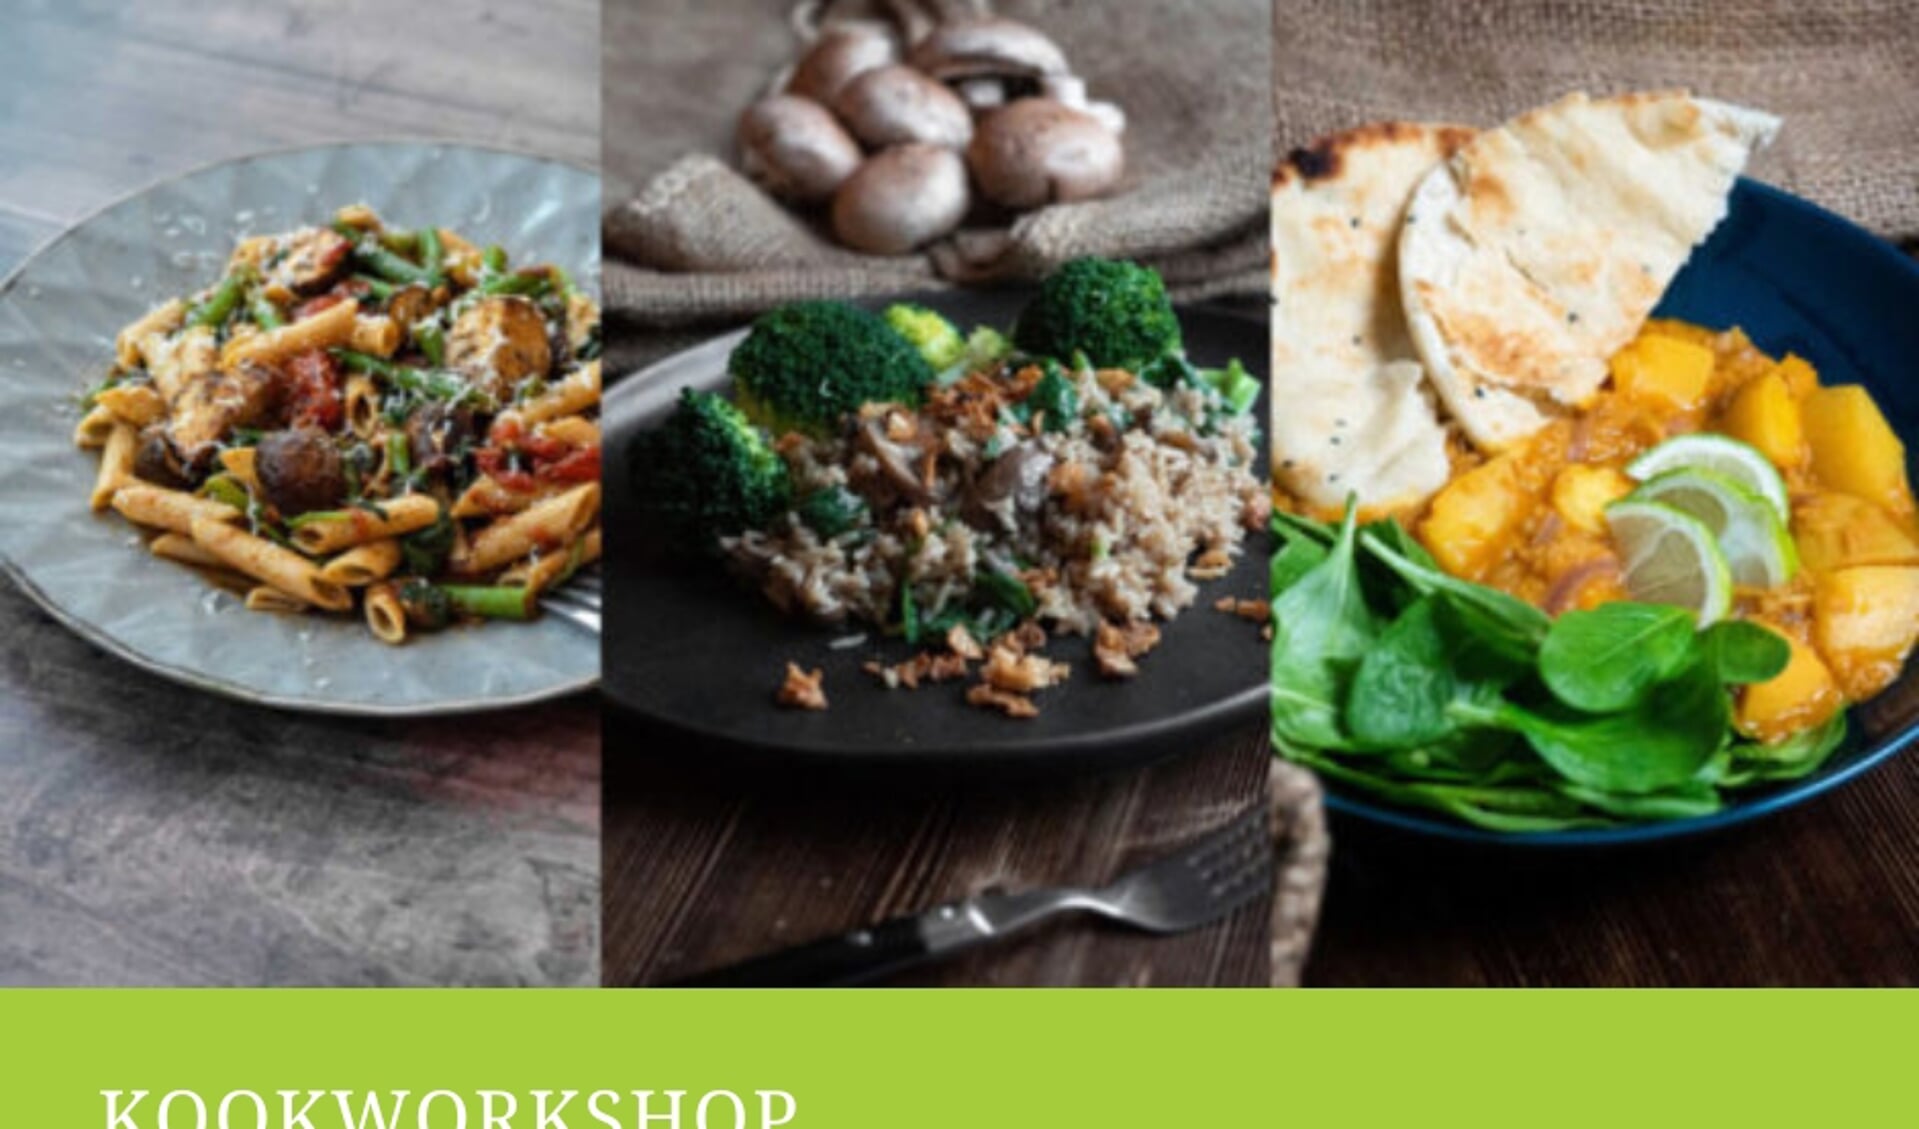 Kookworkshop 'Hoe eet je duurzaam'